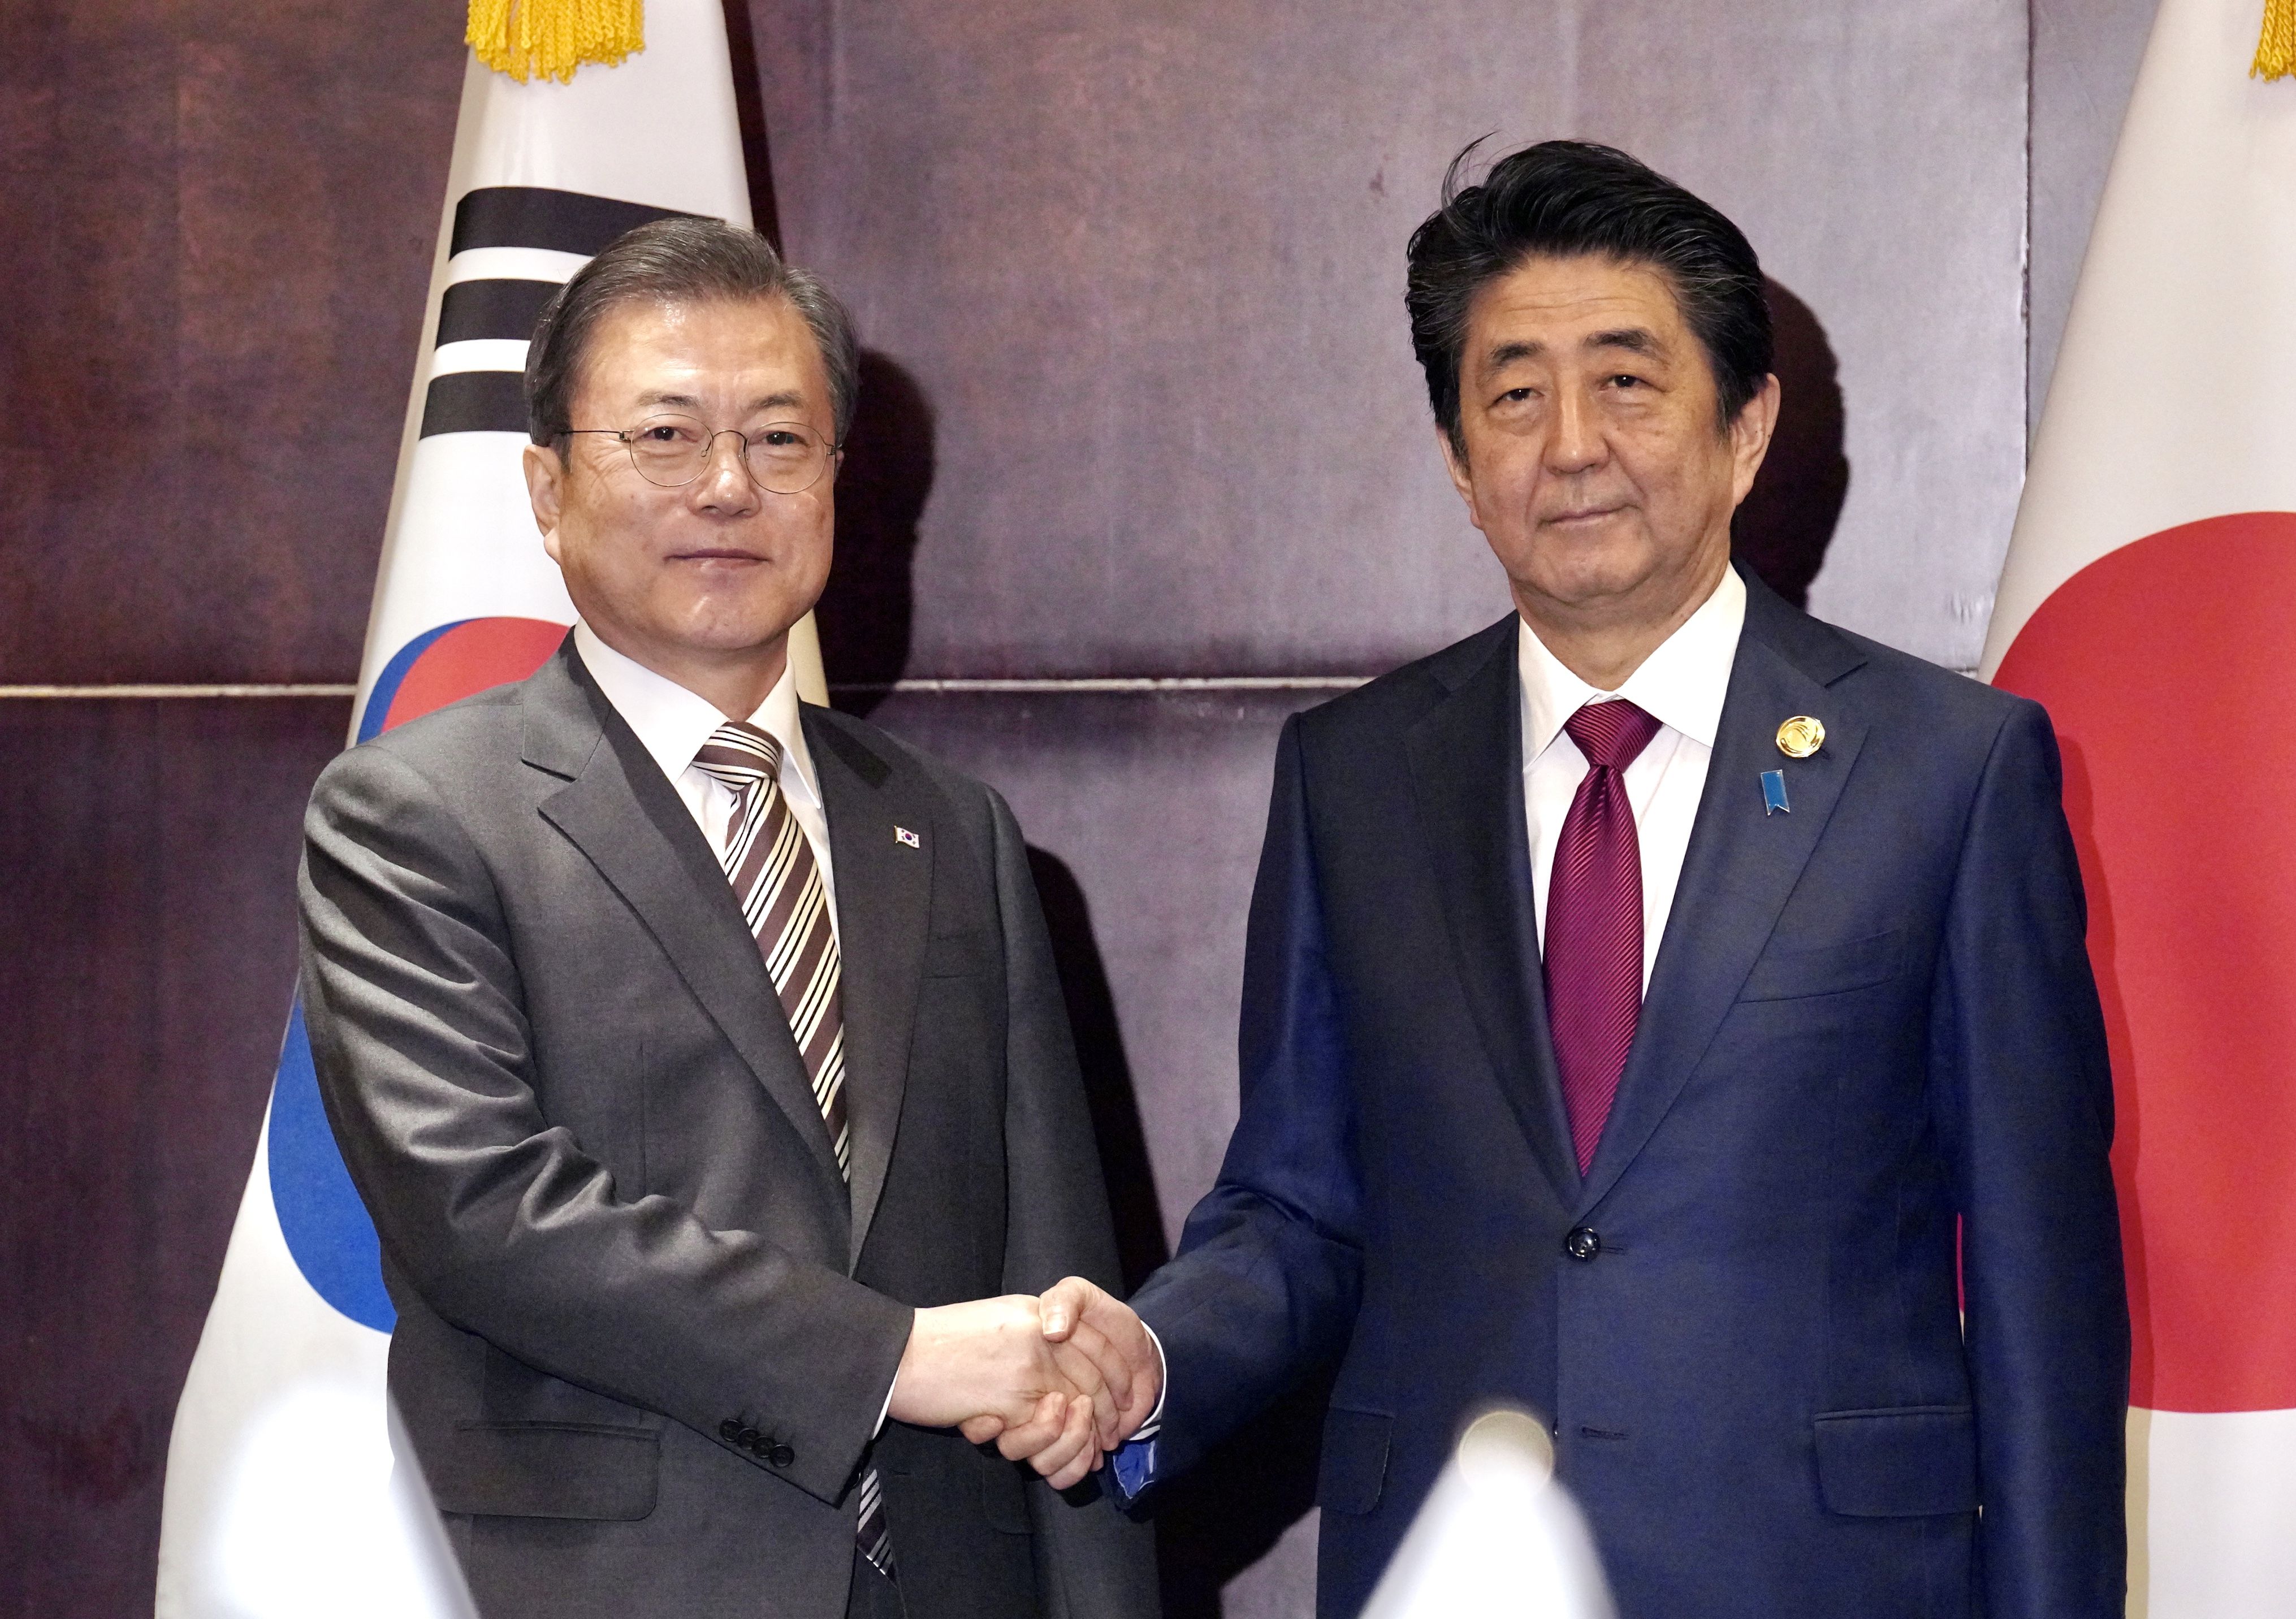 安倍首相辞任で韓国の反応「日韓関係改善は困難」　関係改善の糸口を模索するも「誰になっても劇的変化なし」の見方